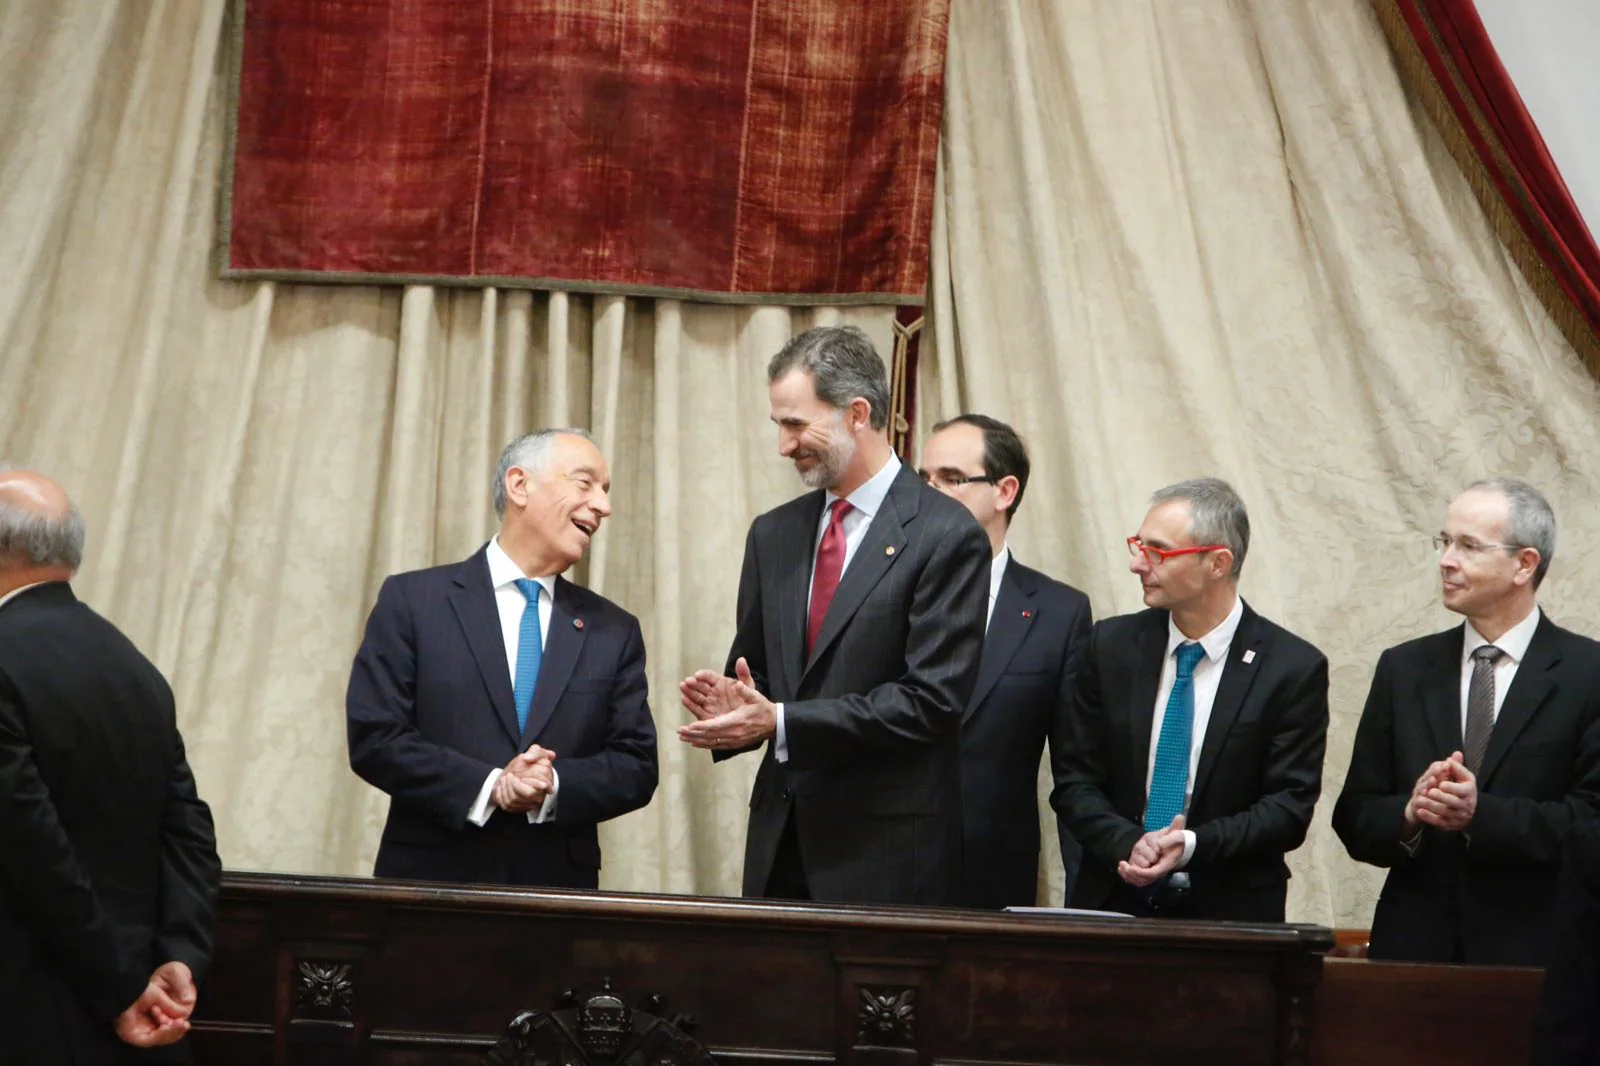 El presidente del Portugal, Marcelo Rebelo de Sousa, concluye en Salamanca su visita de Estado de tres días a España con un acto en el paraninfo de la Universidad más antigua del país en compañía de Felipe VI.